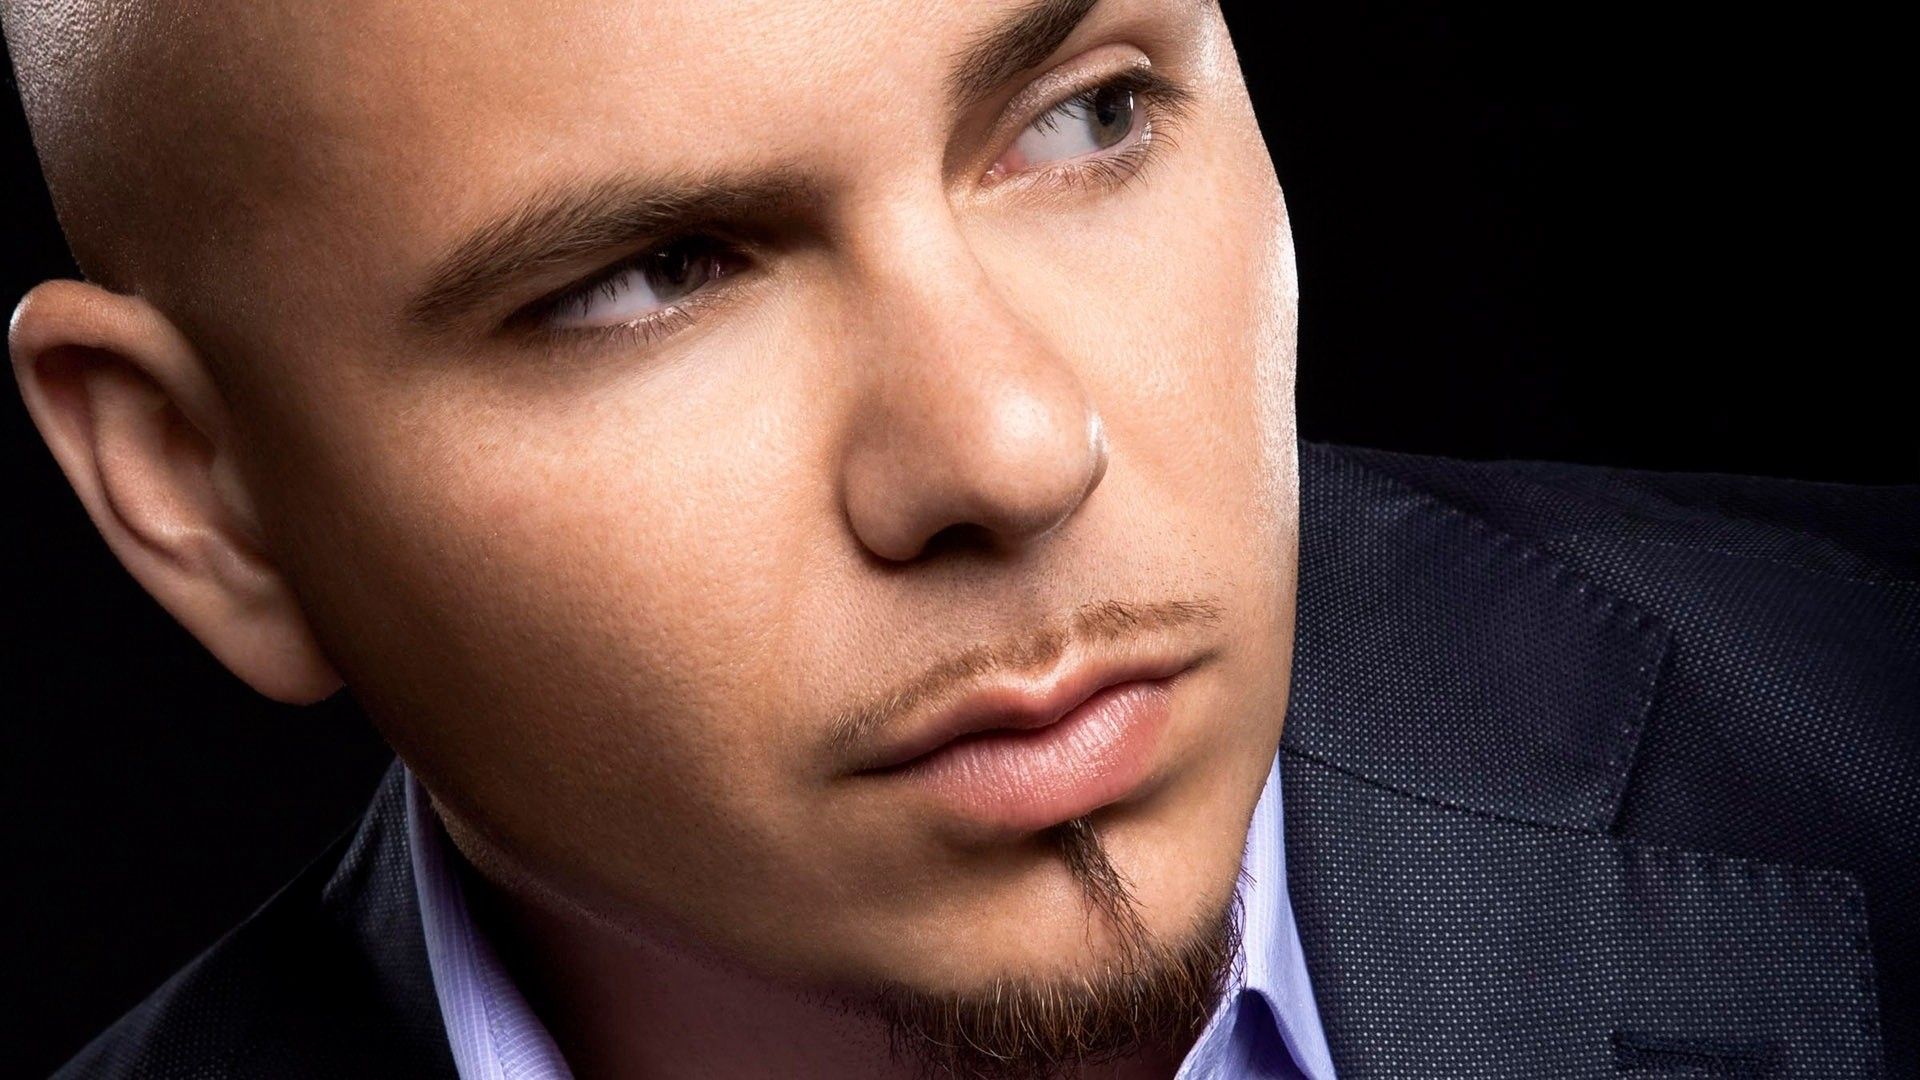 image Of Pitbull The Singer